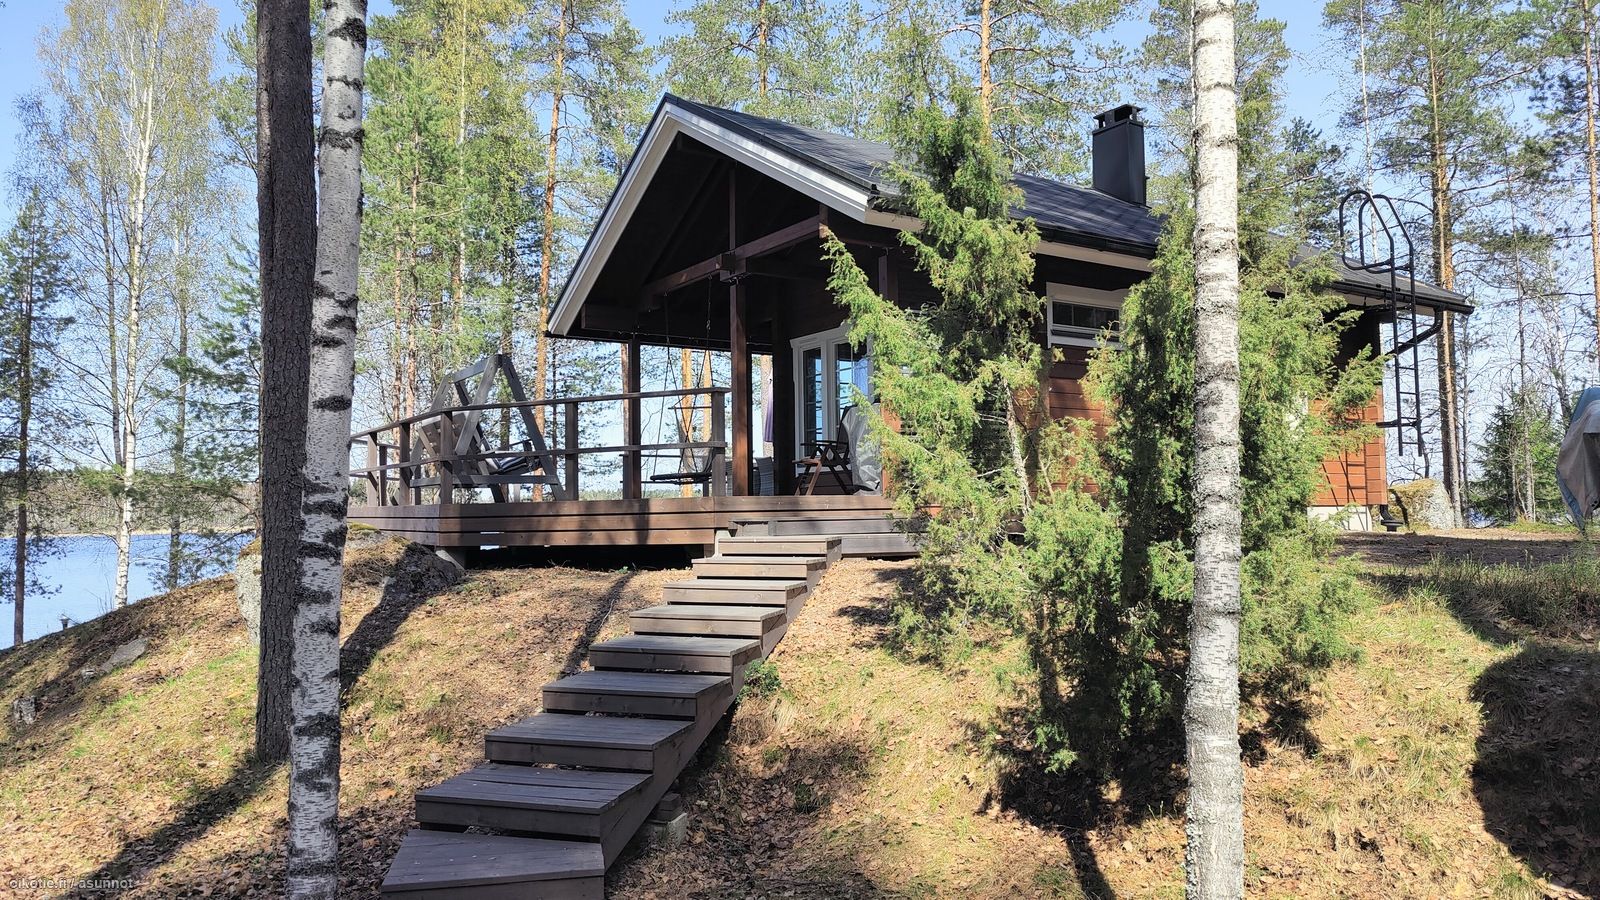 29 m² Sorsansalmi 52, 46530 Luumäki Tupakeittiö, pesuhuone, sauna, parvi –  Oikotie 17286593 – SKVL